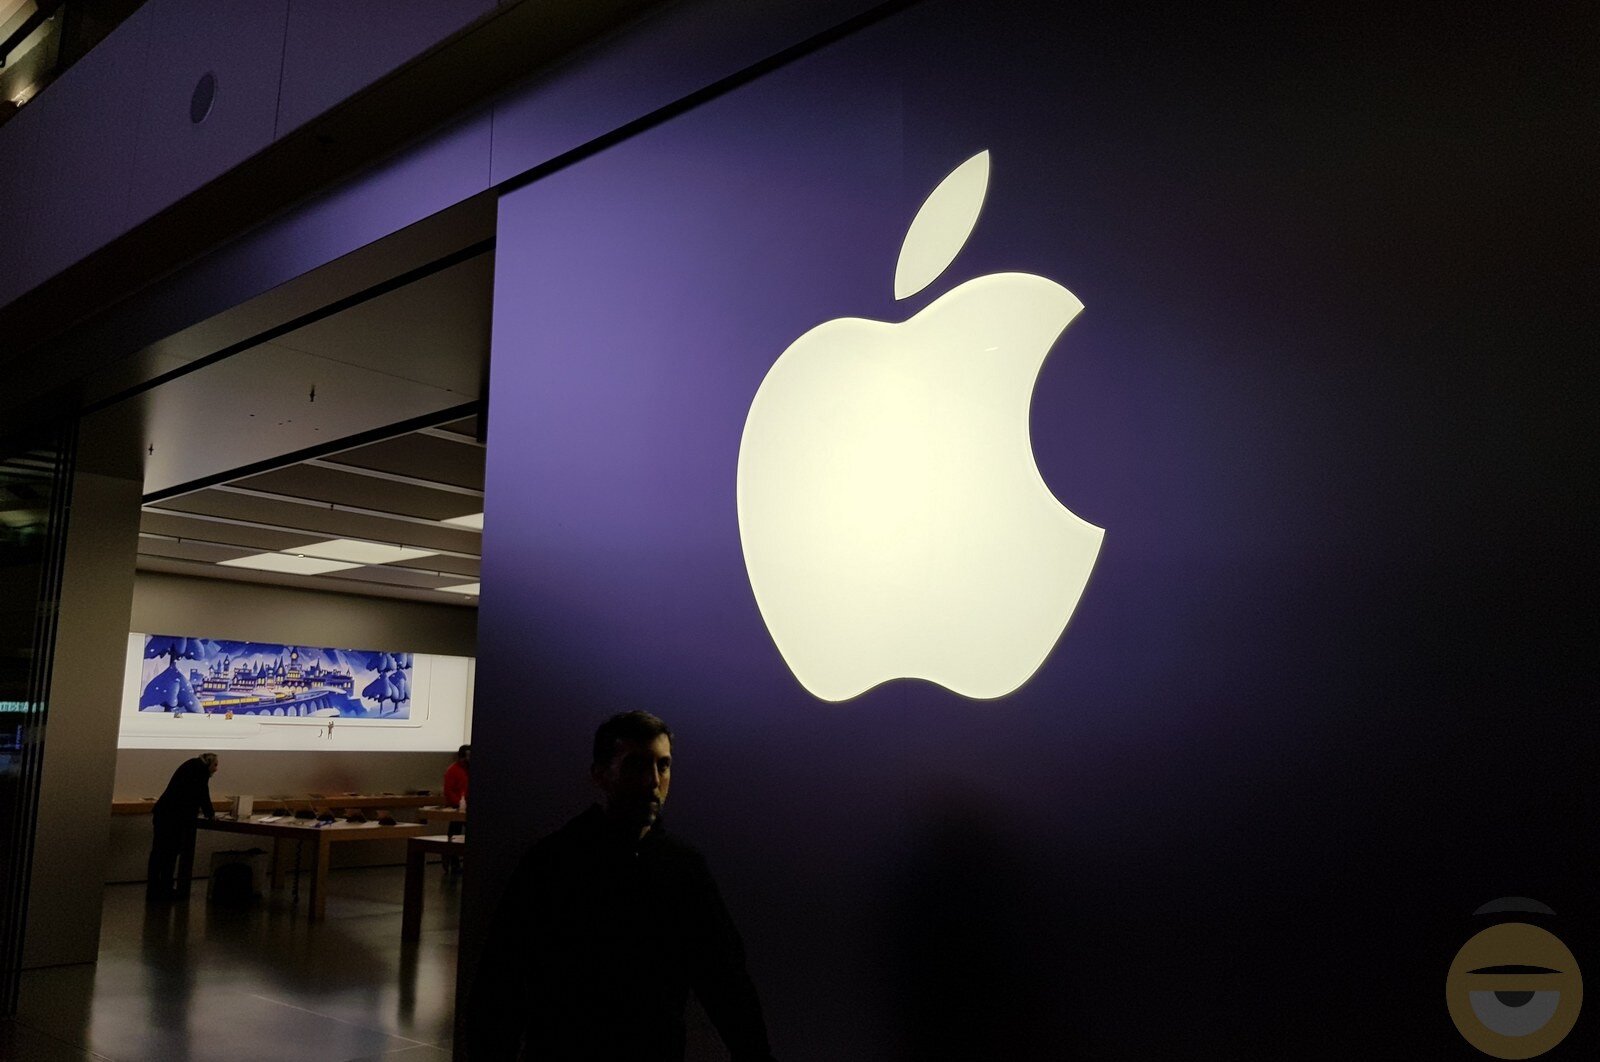 Η χρηματιστηριακή αξία της Apple ξεπερνά τα 2 τρις δολάρια εν μέσω πανδημίας